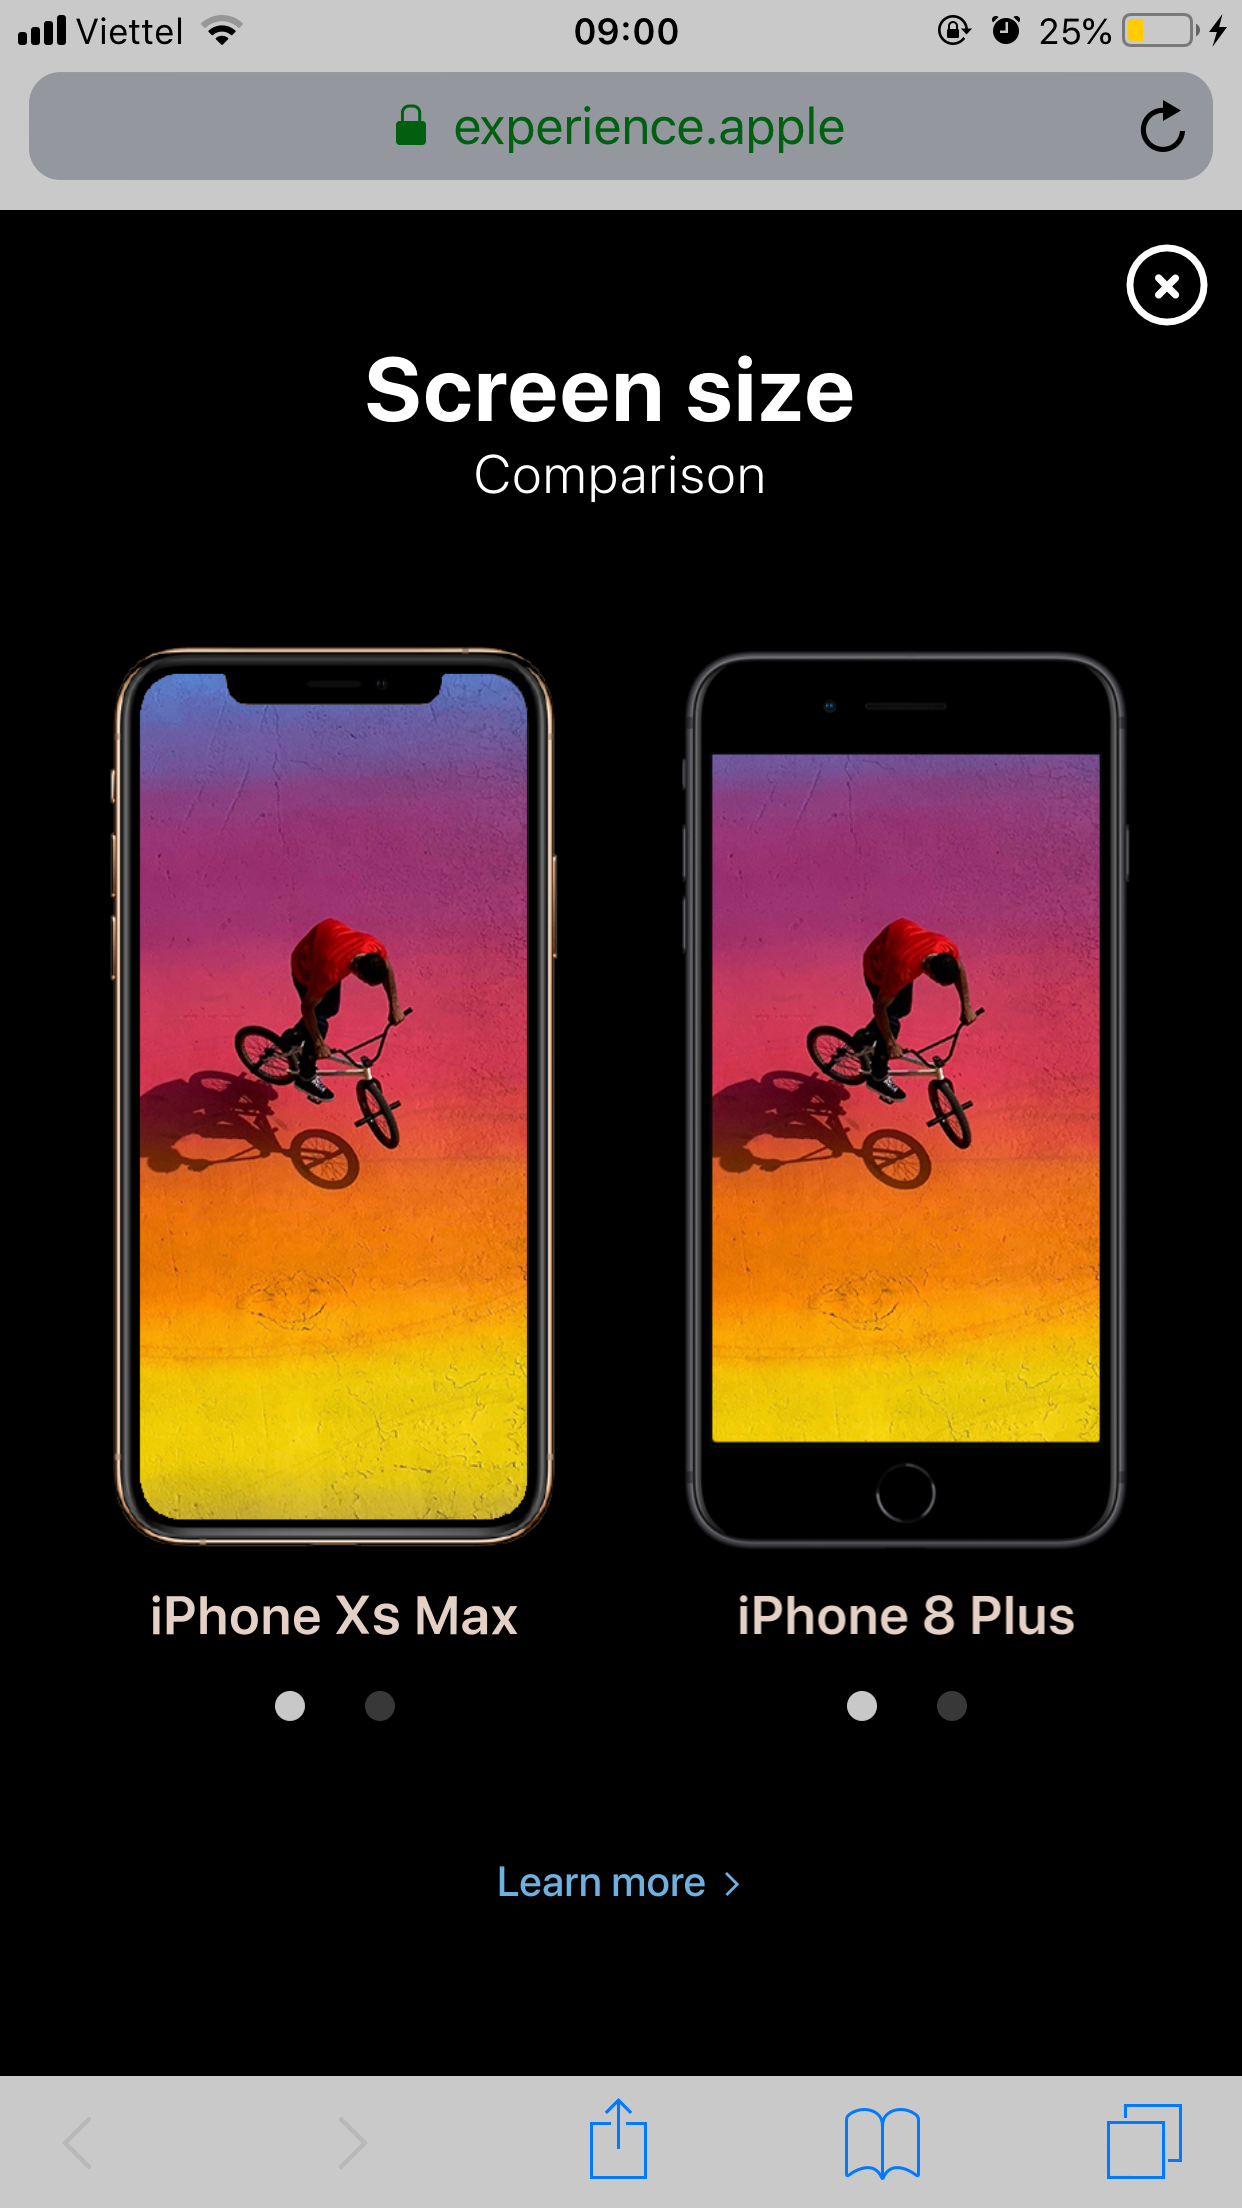 3d iphone xs max iphone xs, chiêm ngưỡng iphone mới, apple, iphone xs max, iphone xs, mẫu dựng 360 độ iphone mới, iphone 2018, apple, trang web apple, apple hỗ trợ người dùng, tin tức hằng ngày, tin tức công nghệ mới nhất, ios 12, apple news